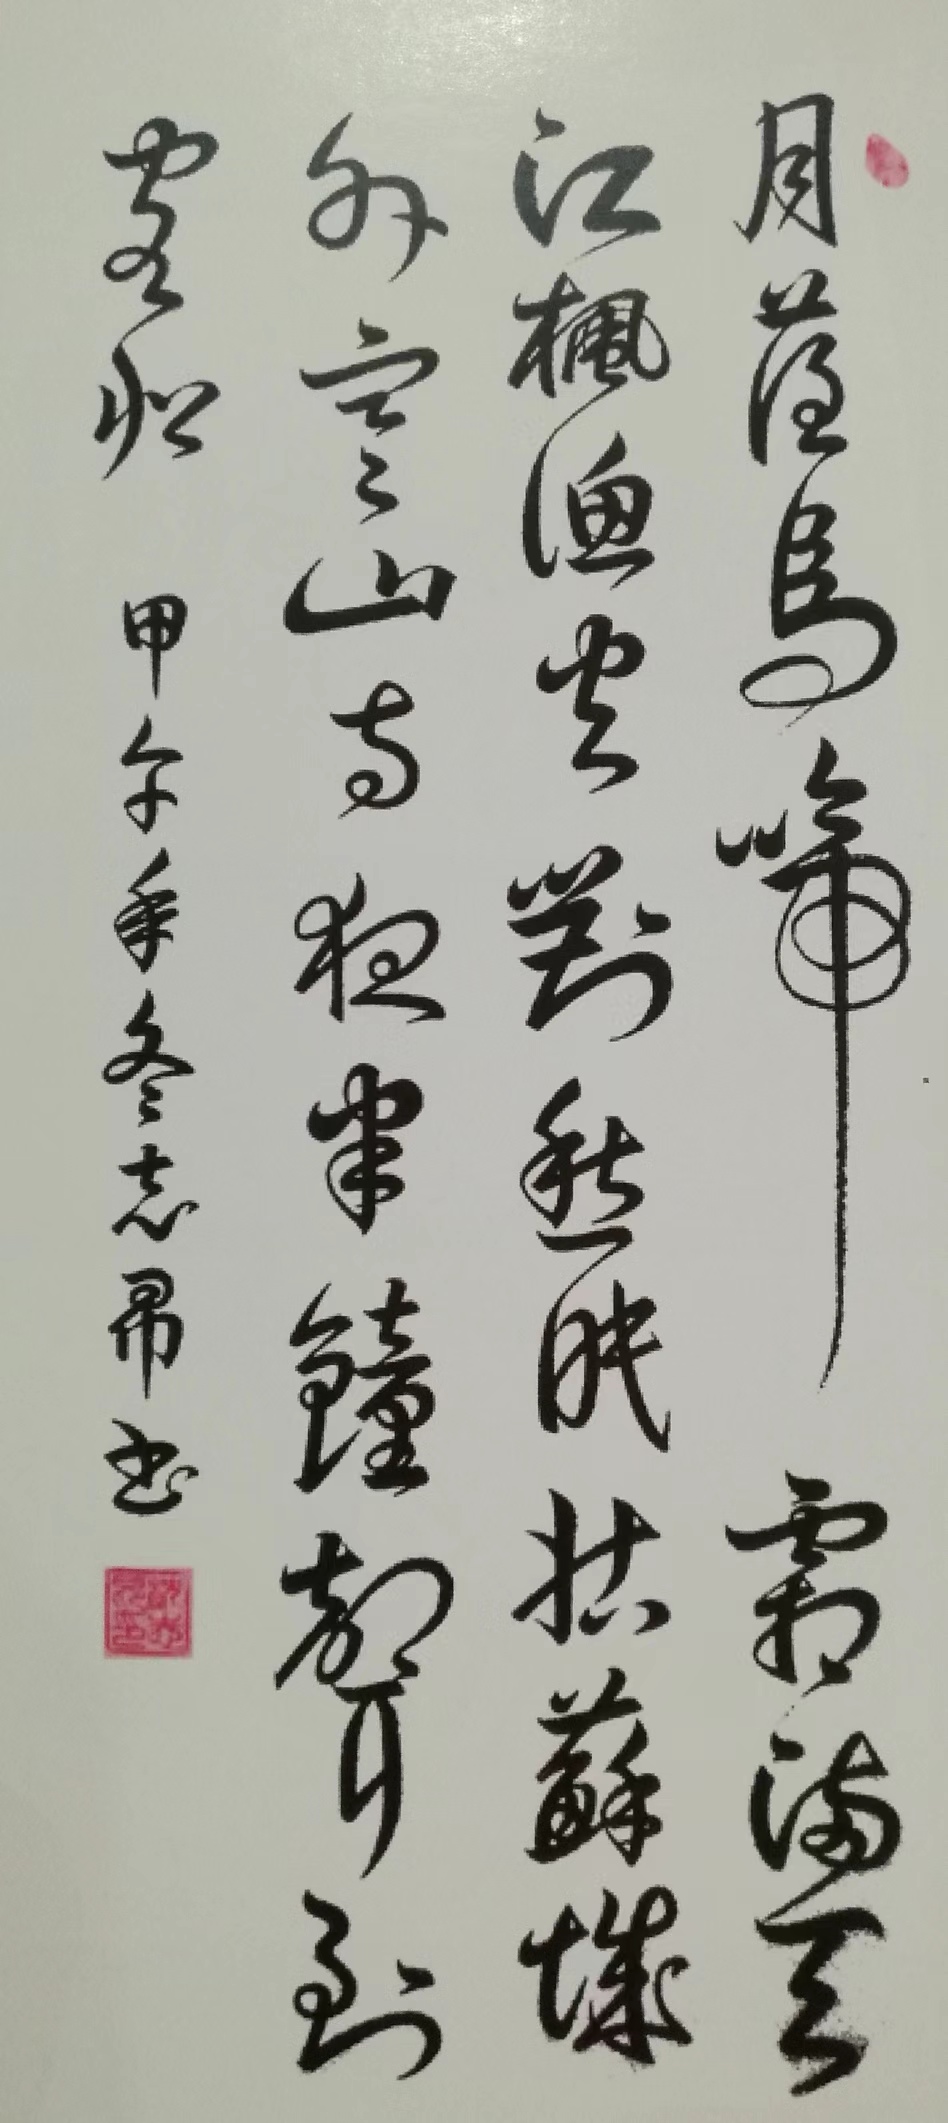 墨写人生--中国人物界特聘顾问沈志昂的书法作品